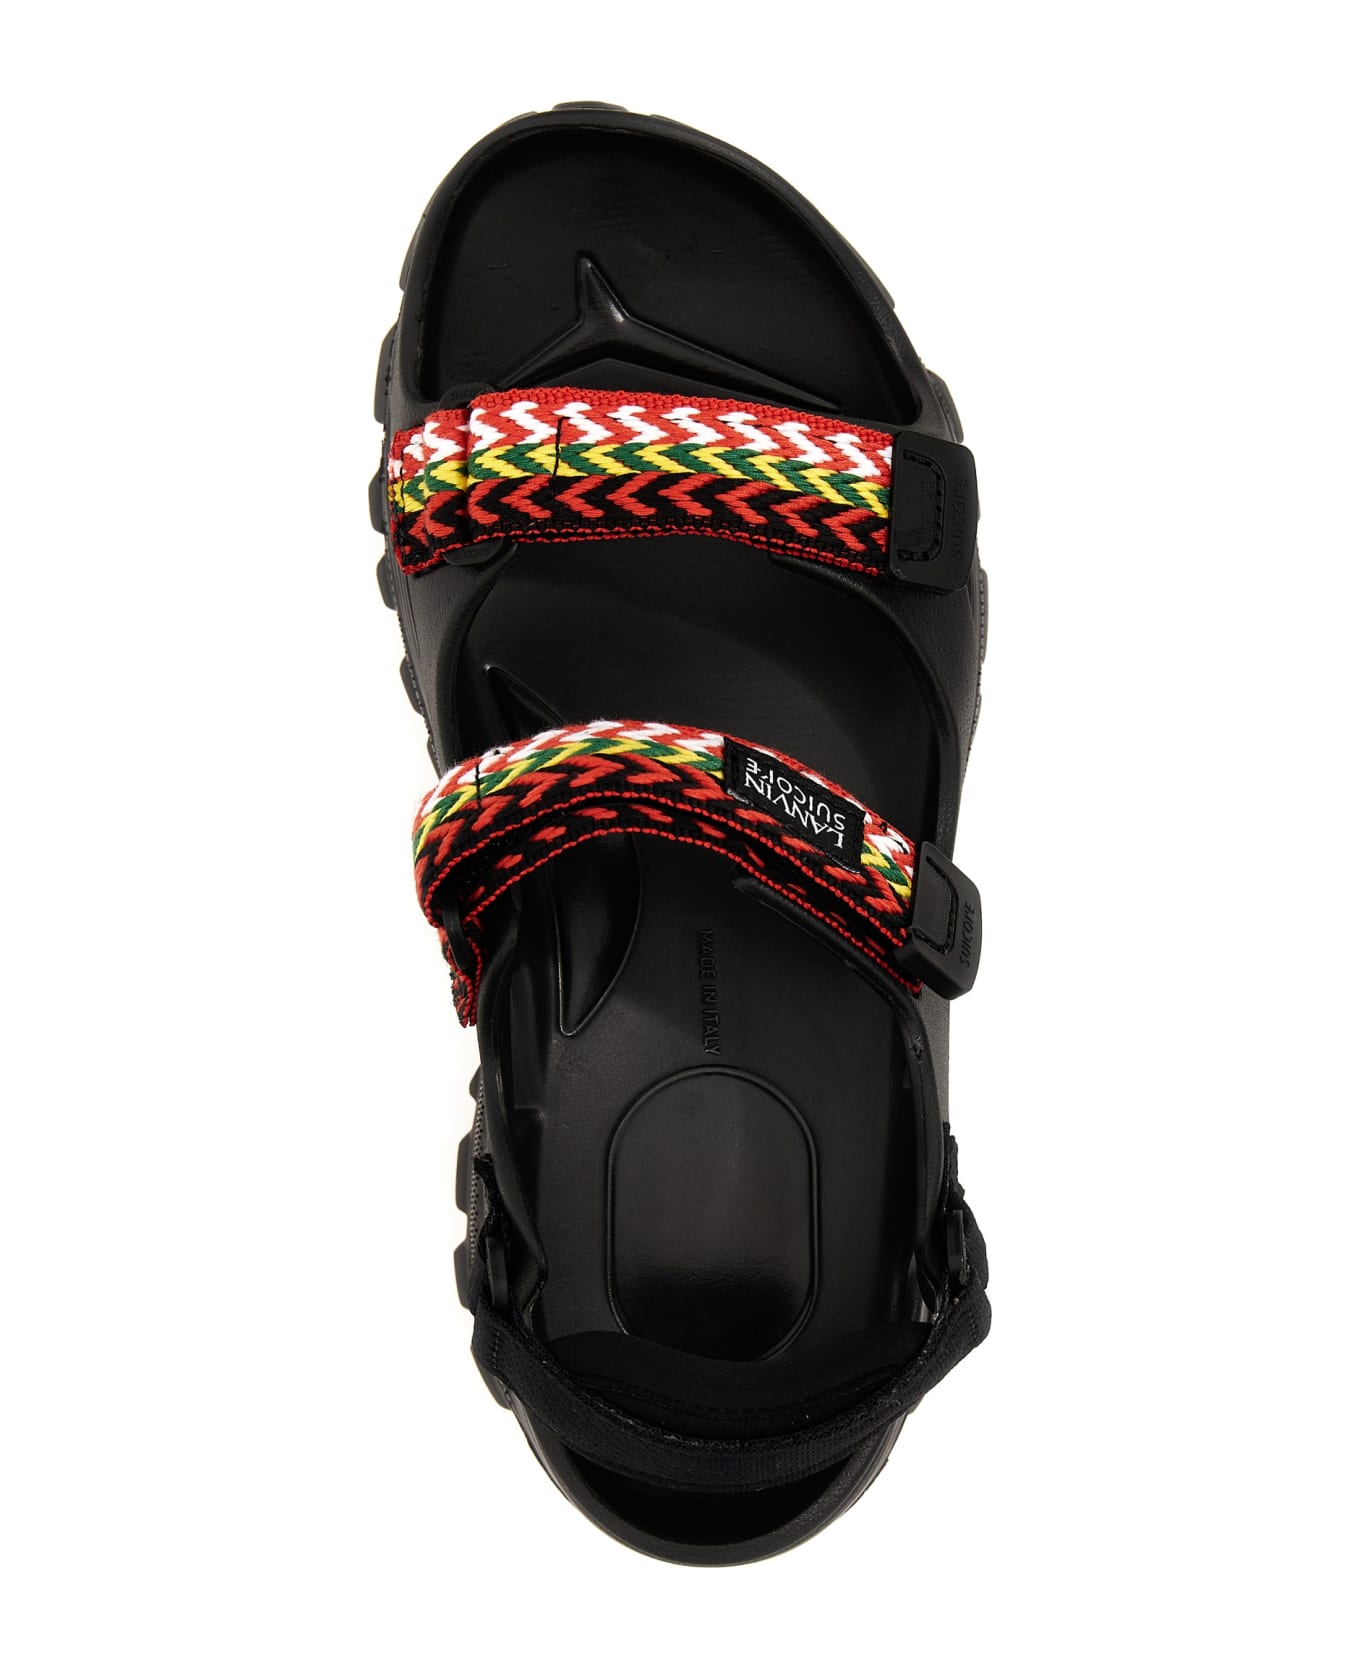 Lanvin Wave Curb Sandals - Black